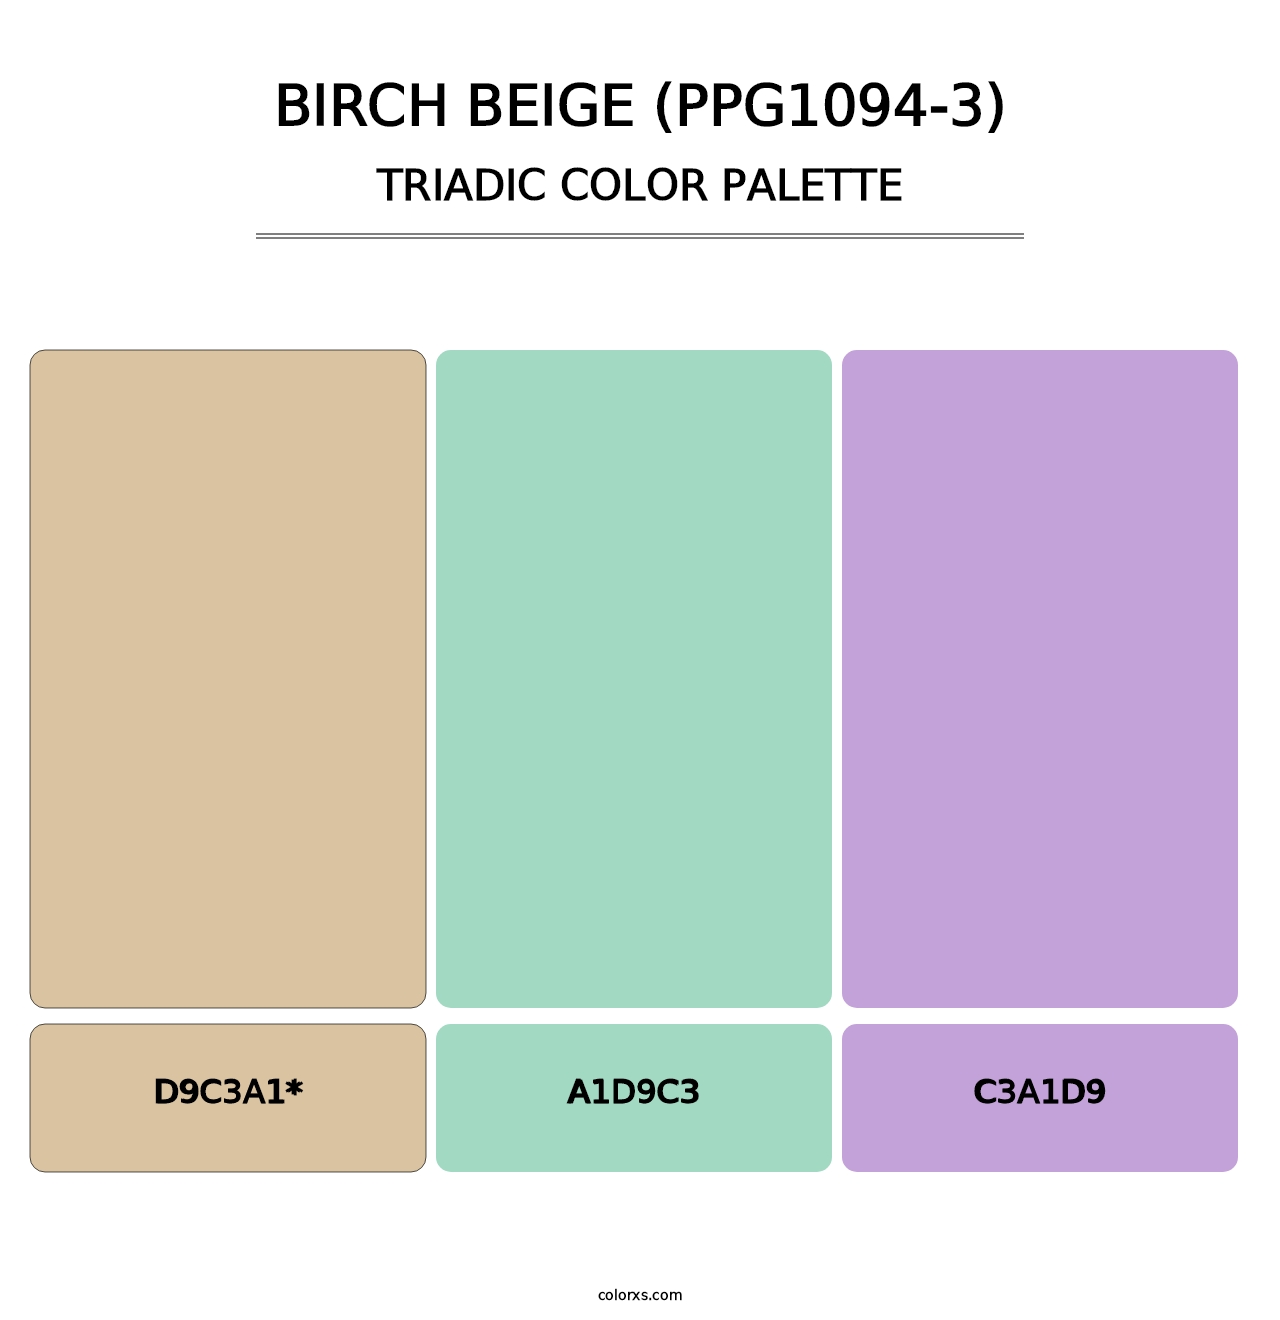 Birch Beige (PPG1094-3) - Triadic Color Palette